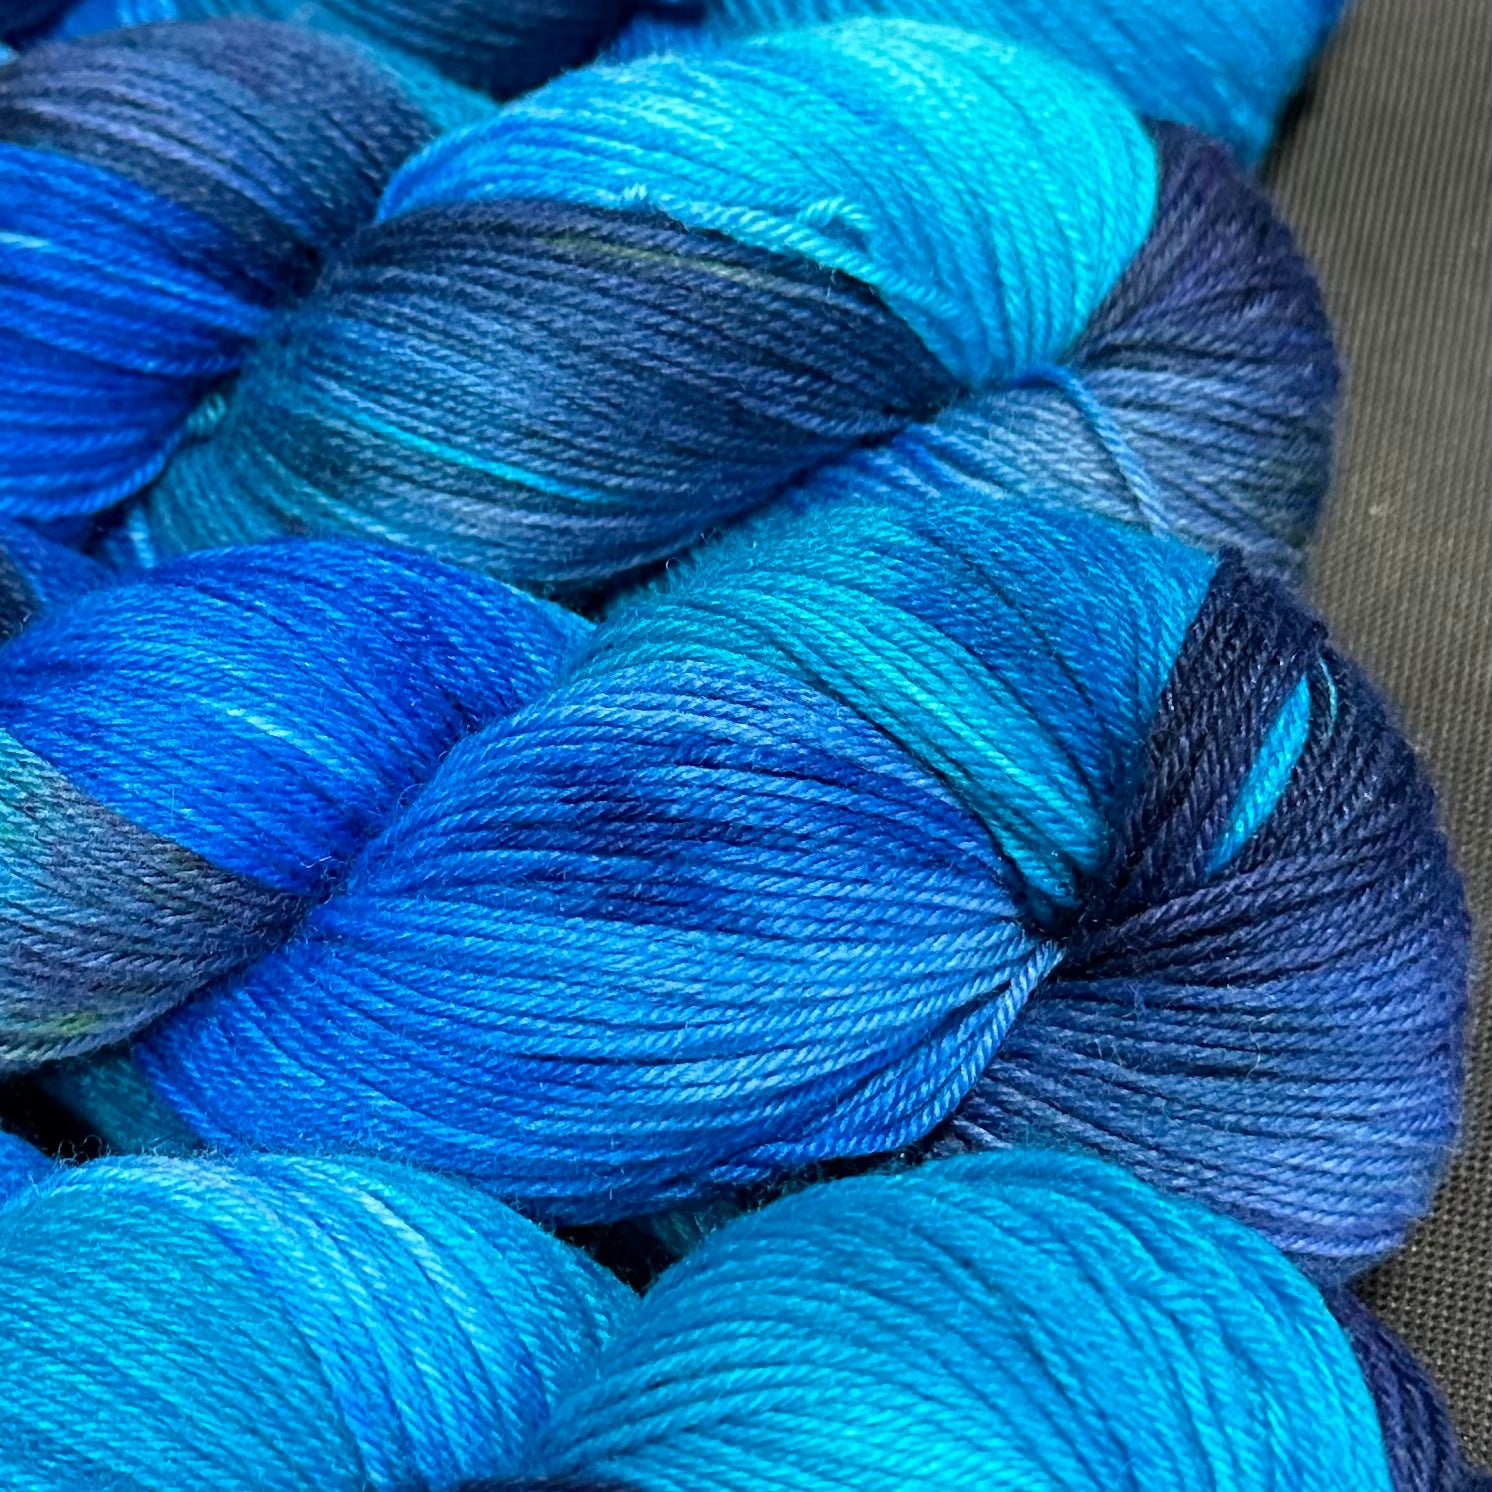 Good Juju Sock yarn Black Hills – Deep Dyed Yarns